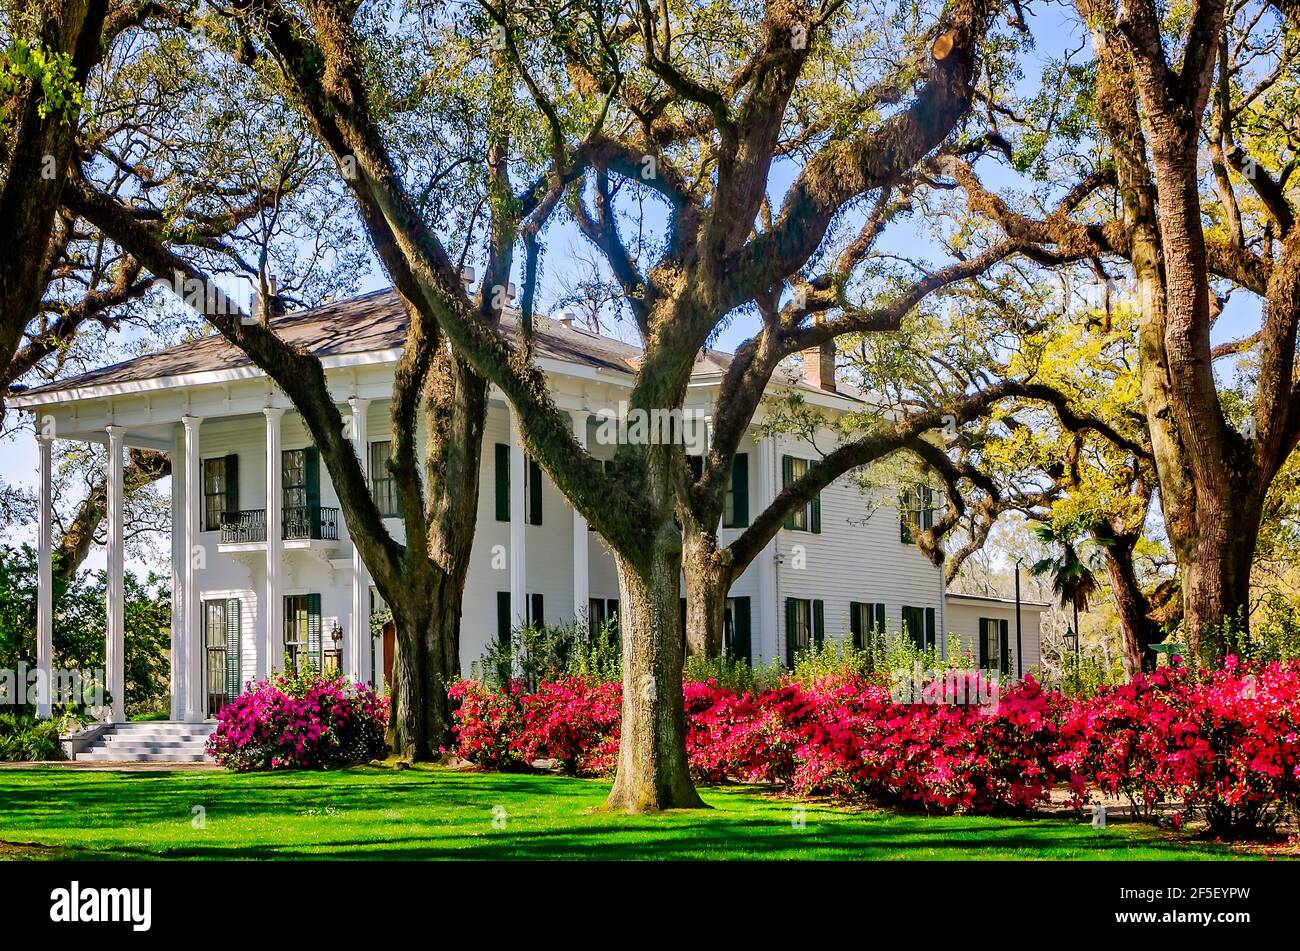 Le azalee fioriscono alla residenza di Bragg-Mitchell, 21 marzo 2021, a Mobile, Alabama. Il palazzo del 1855, risalente al periodo precedente la guerra di secessione greca, è un'attrazione molto apprezzata. Foto Stock